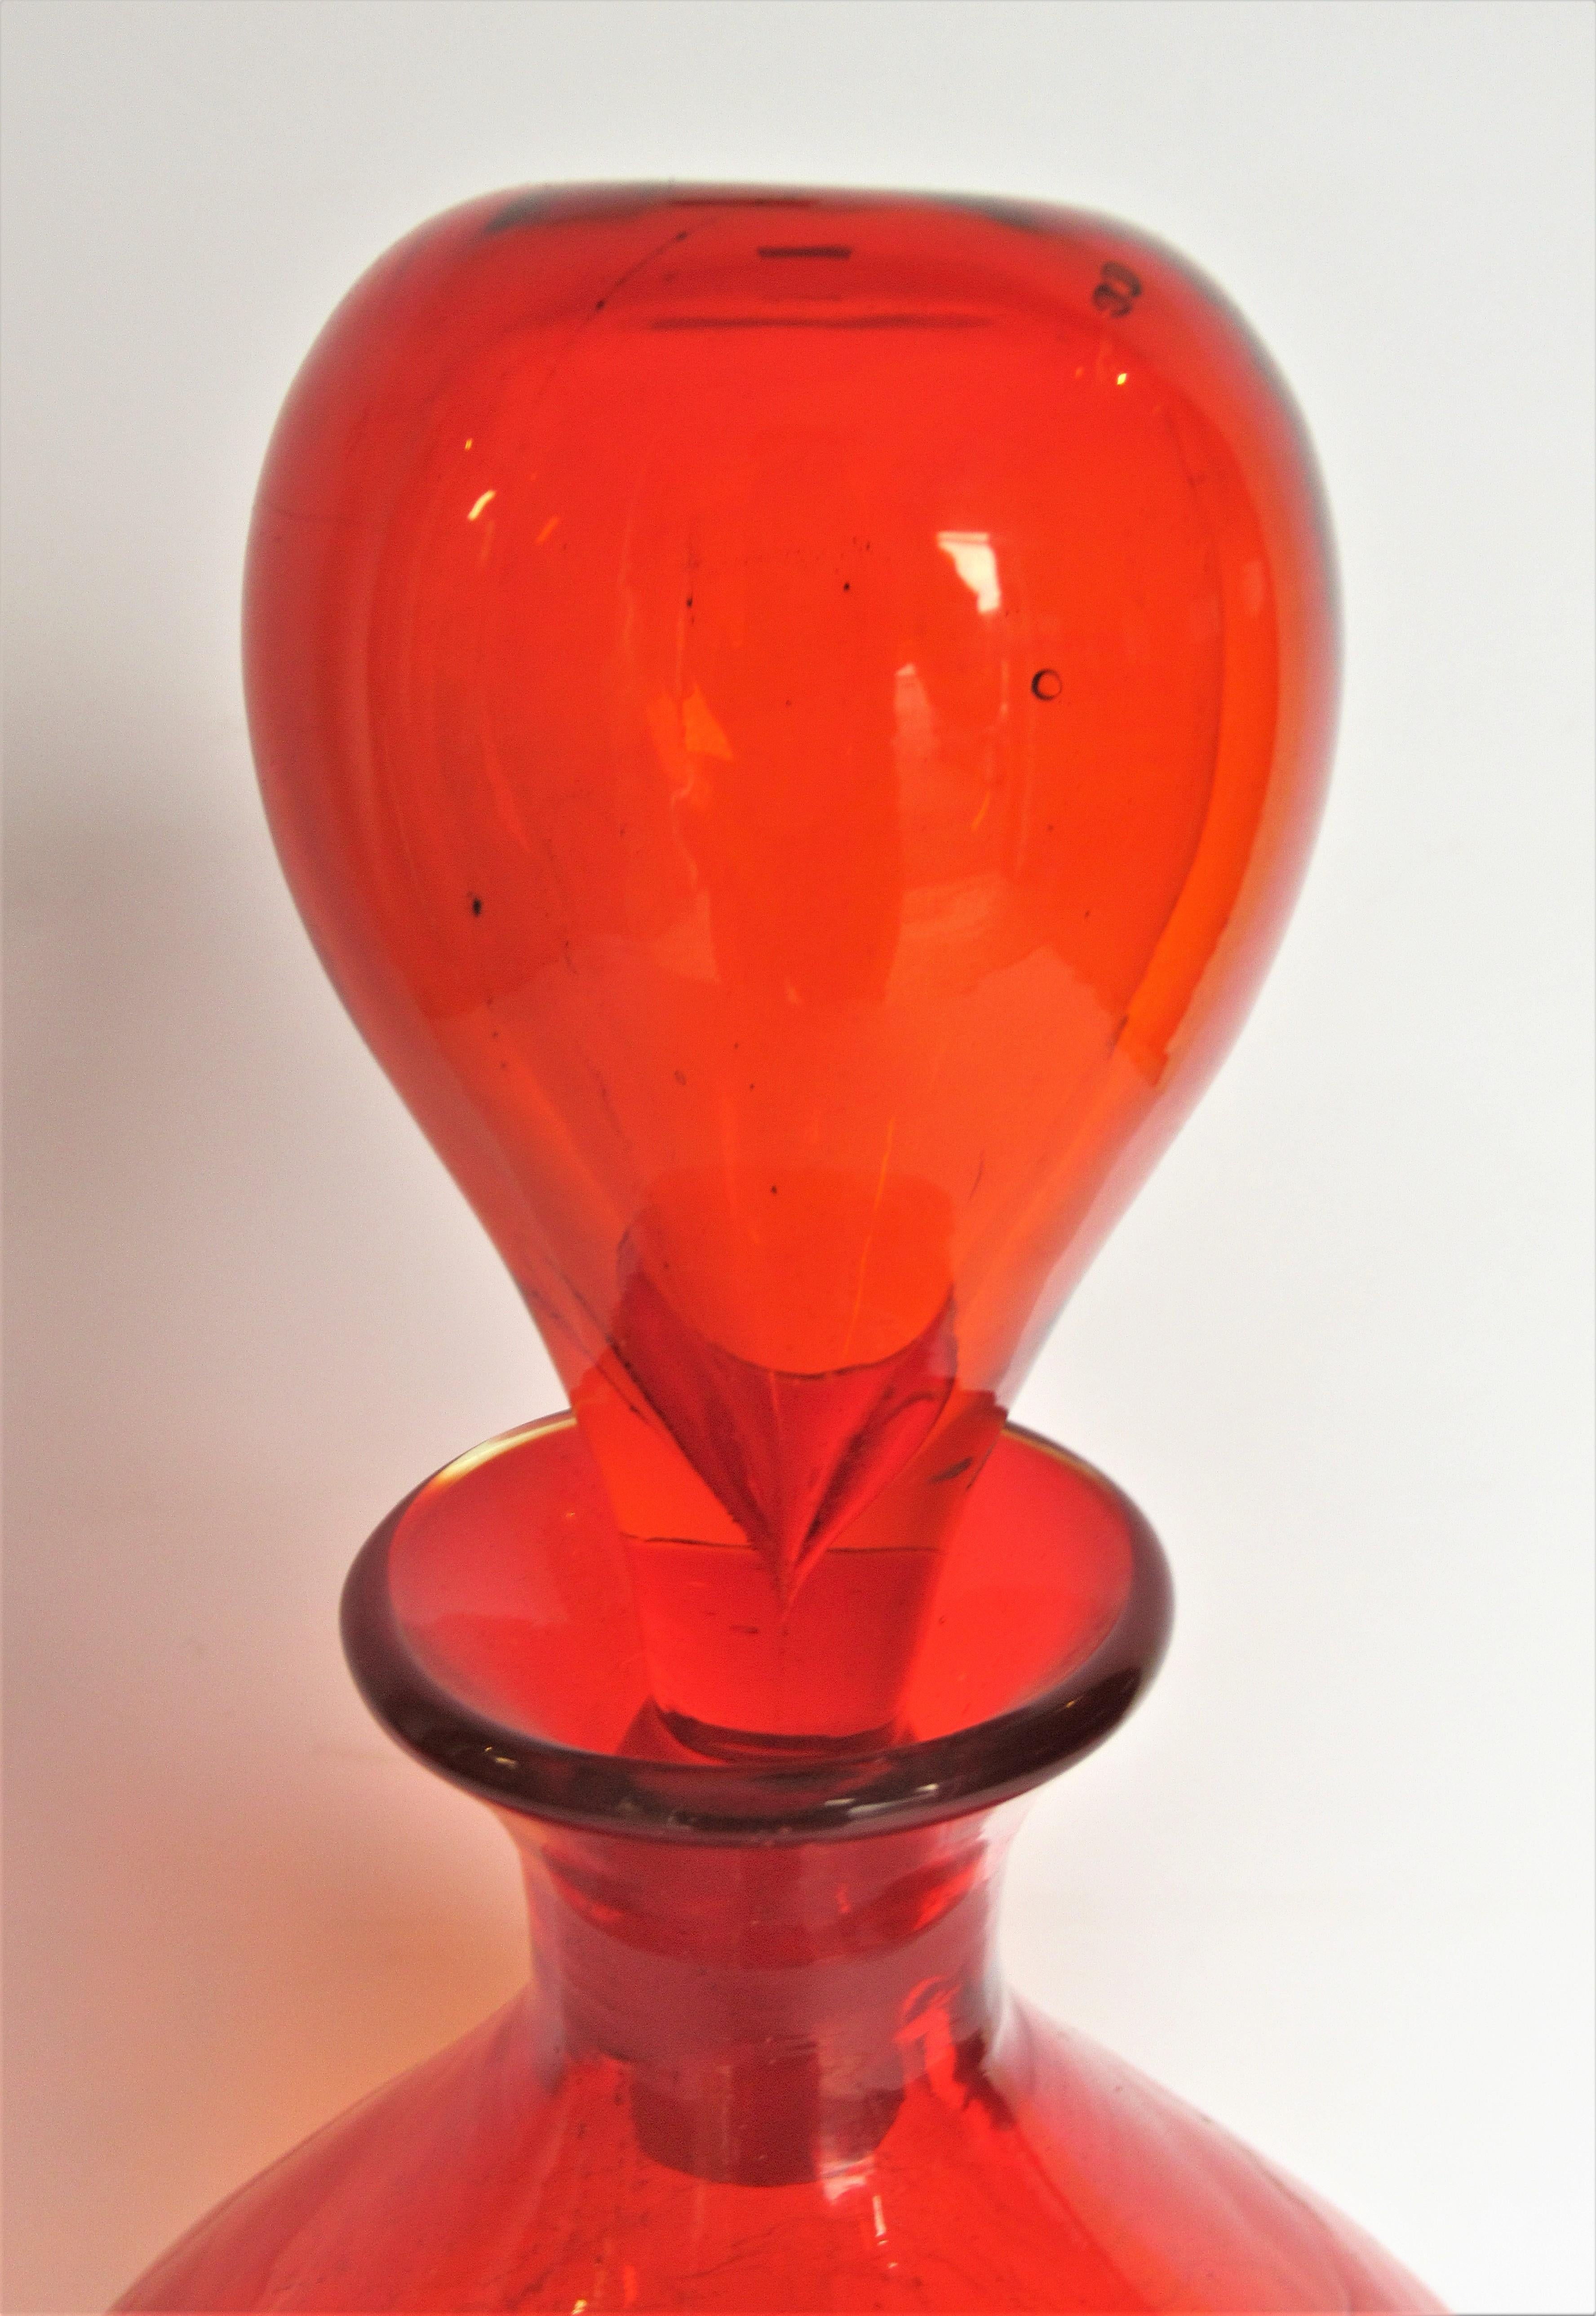 Grande carafe bulbeuse brillante en verre craquelé orange mandarine profond:: réalisée par Wayne Husted pour Blenko:: vers 1960. La bouteille avec bouchon mesure 13 pouces de haut x 8 pouces de large. La bouteille sans bouchon mesure 10 1/2 pouces